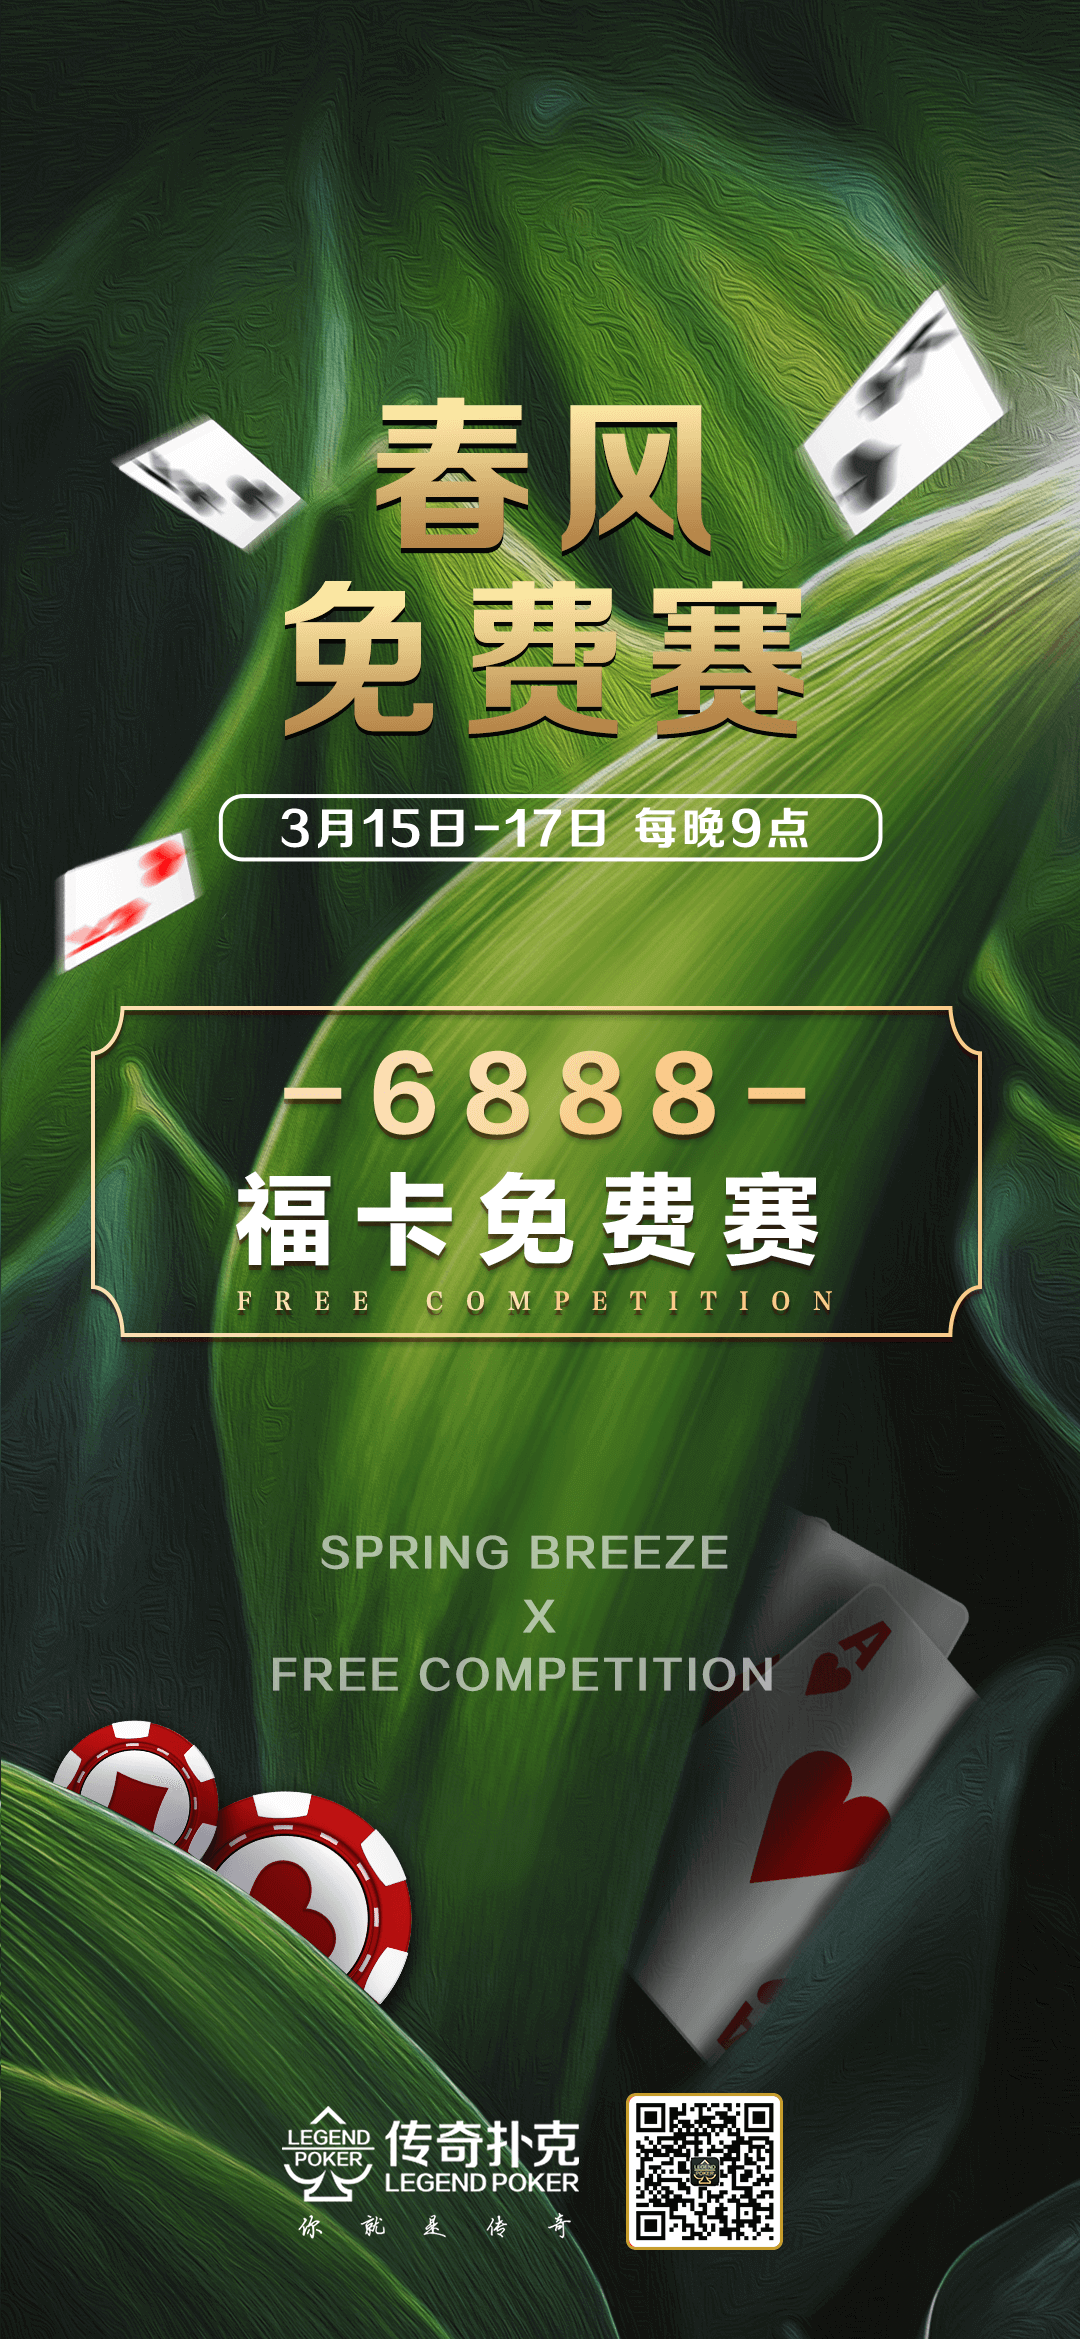 传奇扑克APP春风6888福卡免费赛